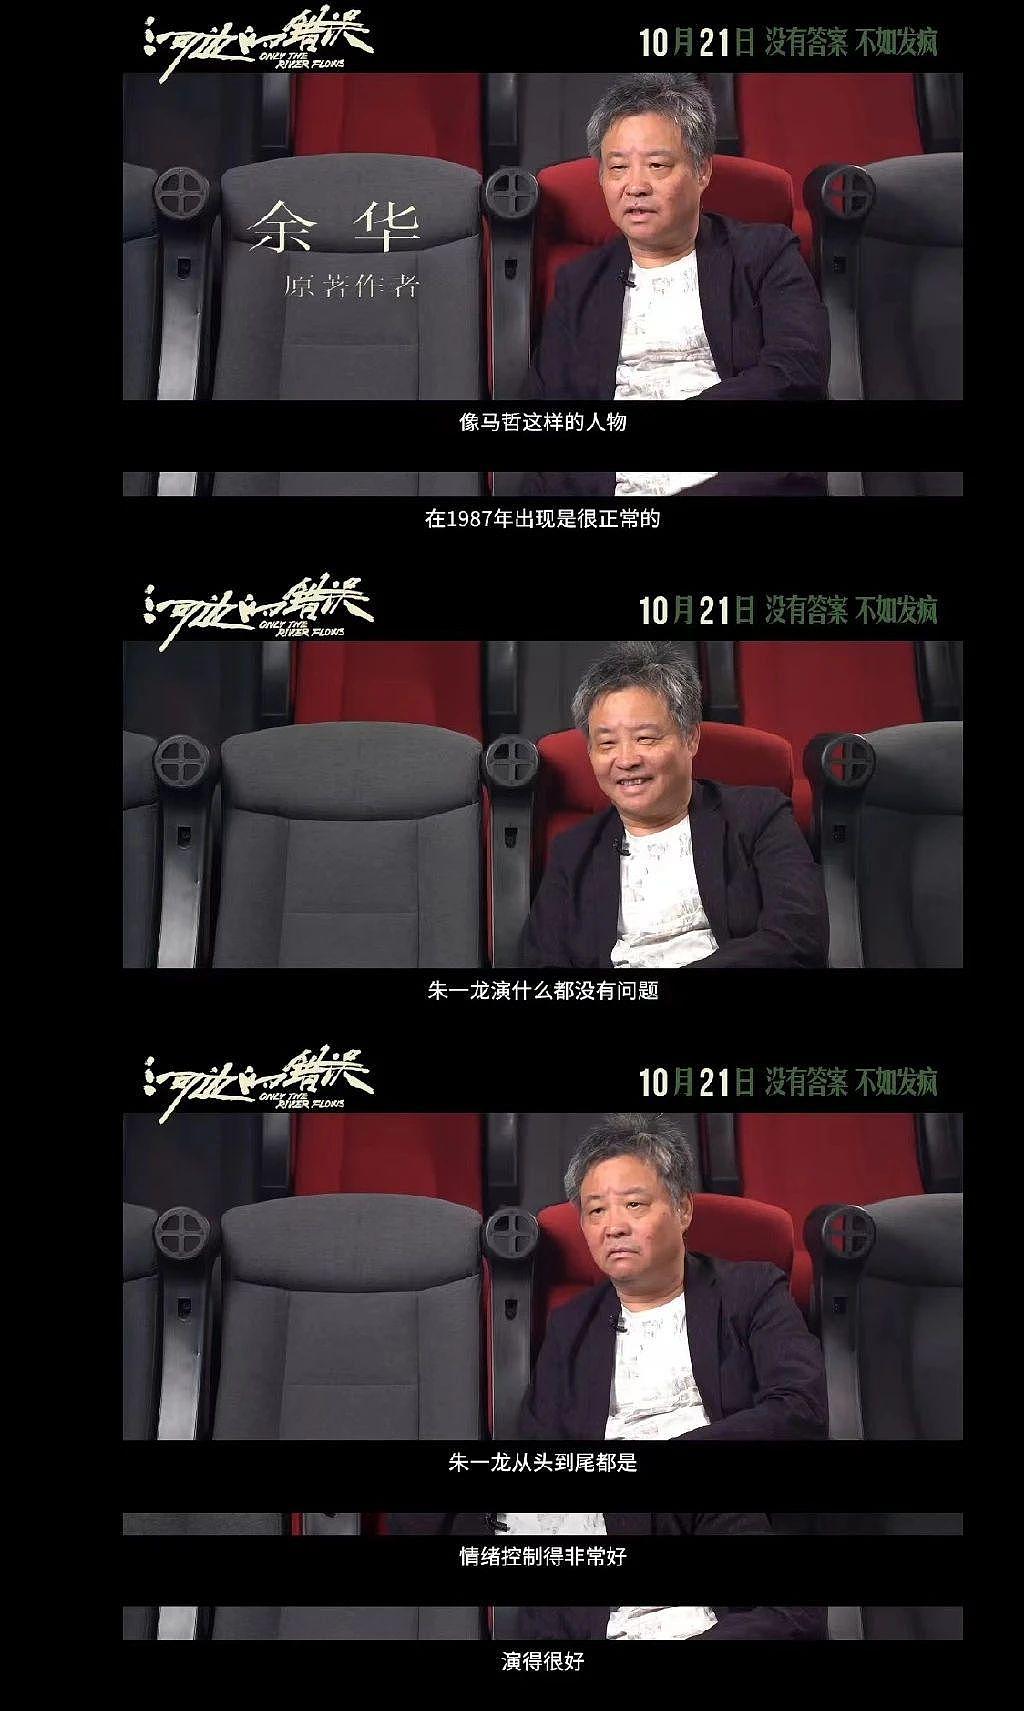 从王俊凯到朱一龙，平遥国际电影展的好笑程度 100000% - 21